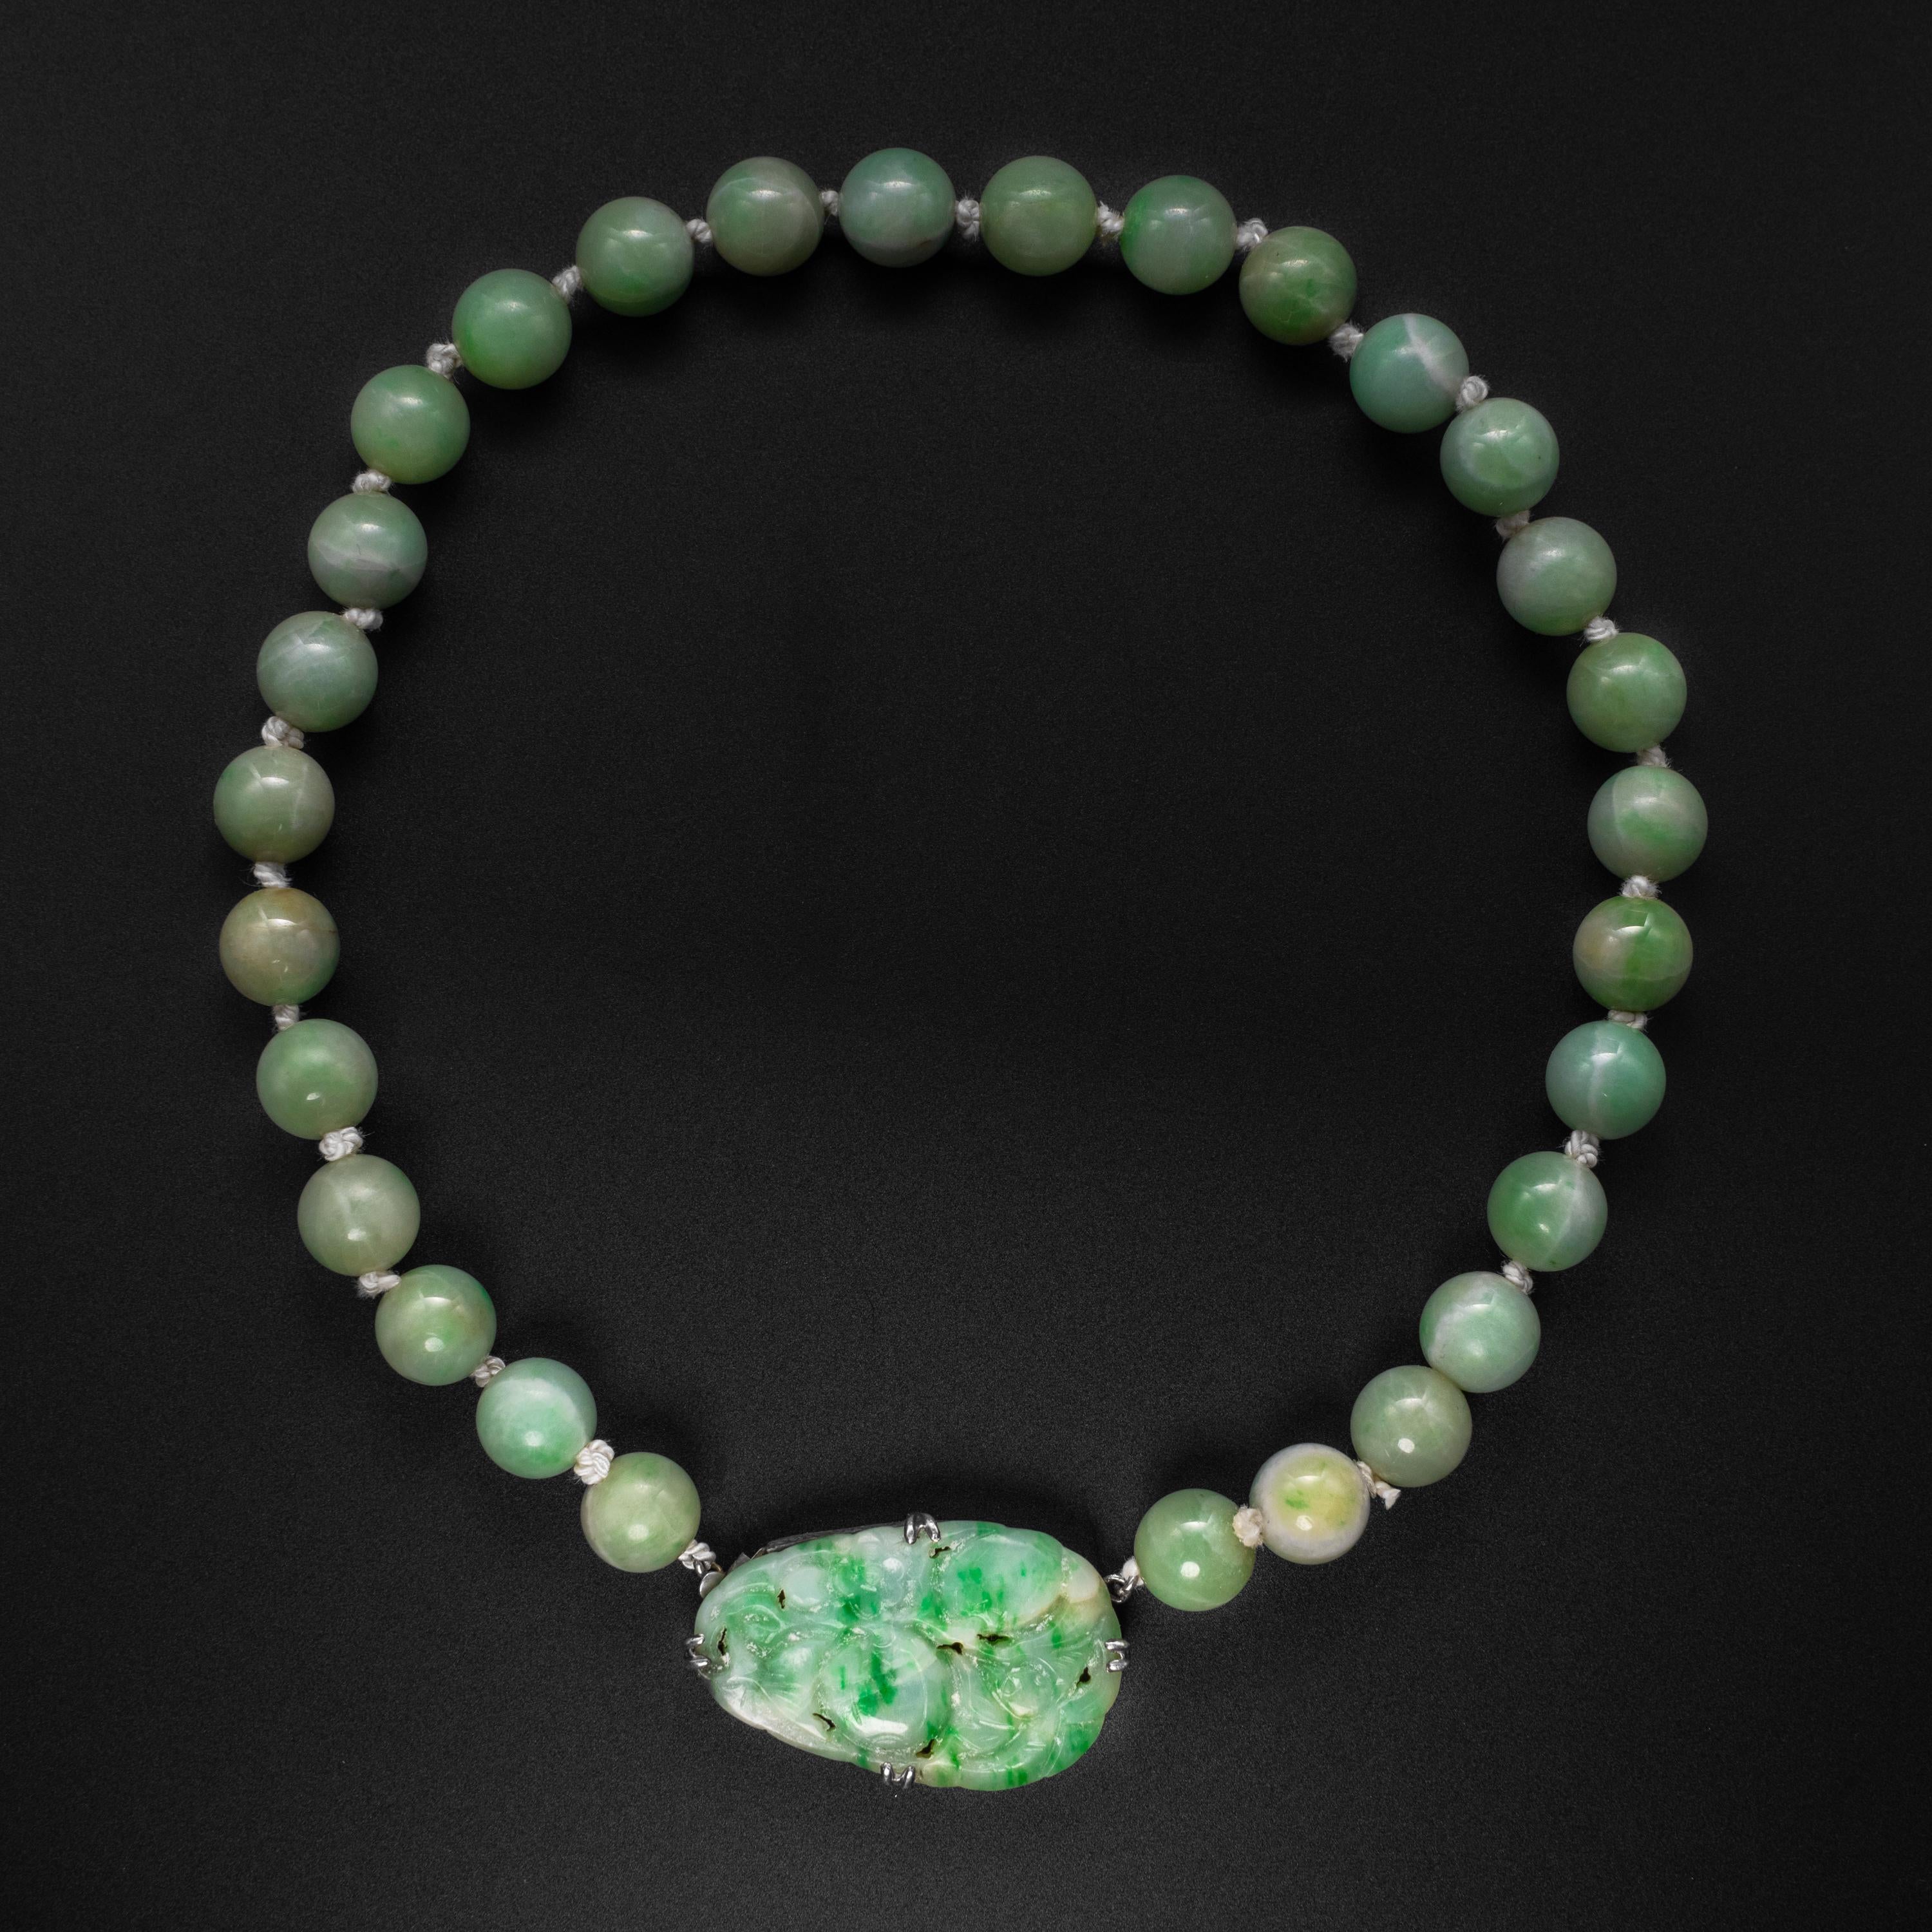 Diese Art-Deco-Jadekette besteht aus 29 11 mm großen, zarten, jungen, grünen burmesischen Jadeit-Perlen, von denen jede einzelne von Hand geschnitzt und poliert wurde, ohne den Einsatz von Elektrizität oder modernen Poliermitteln. Jadeperlen in